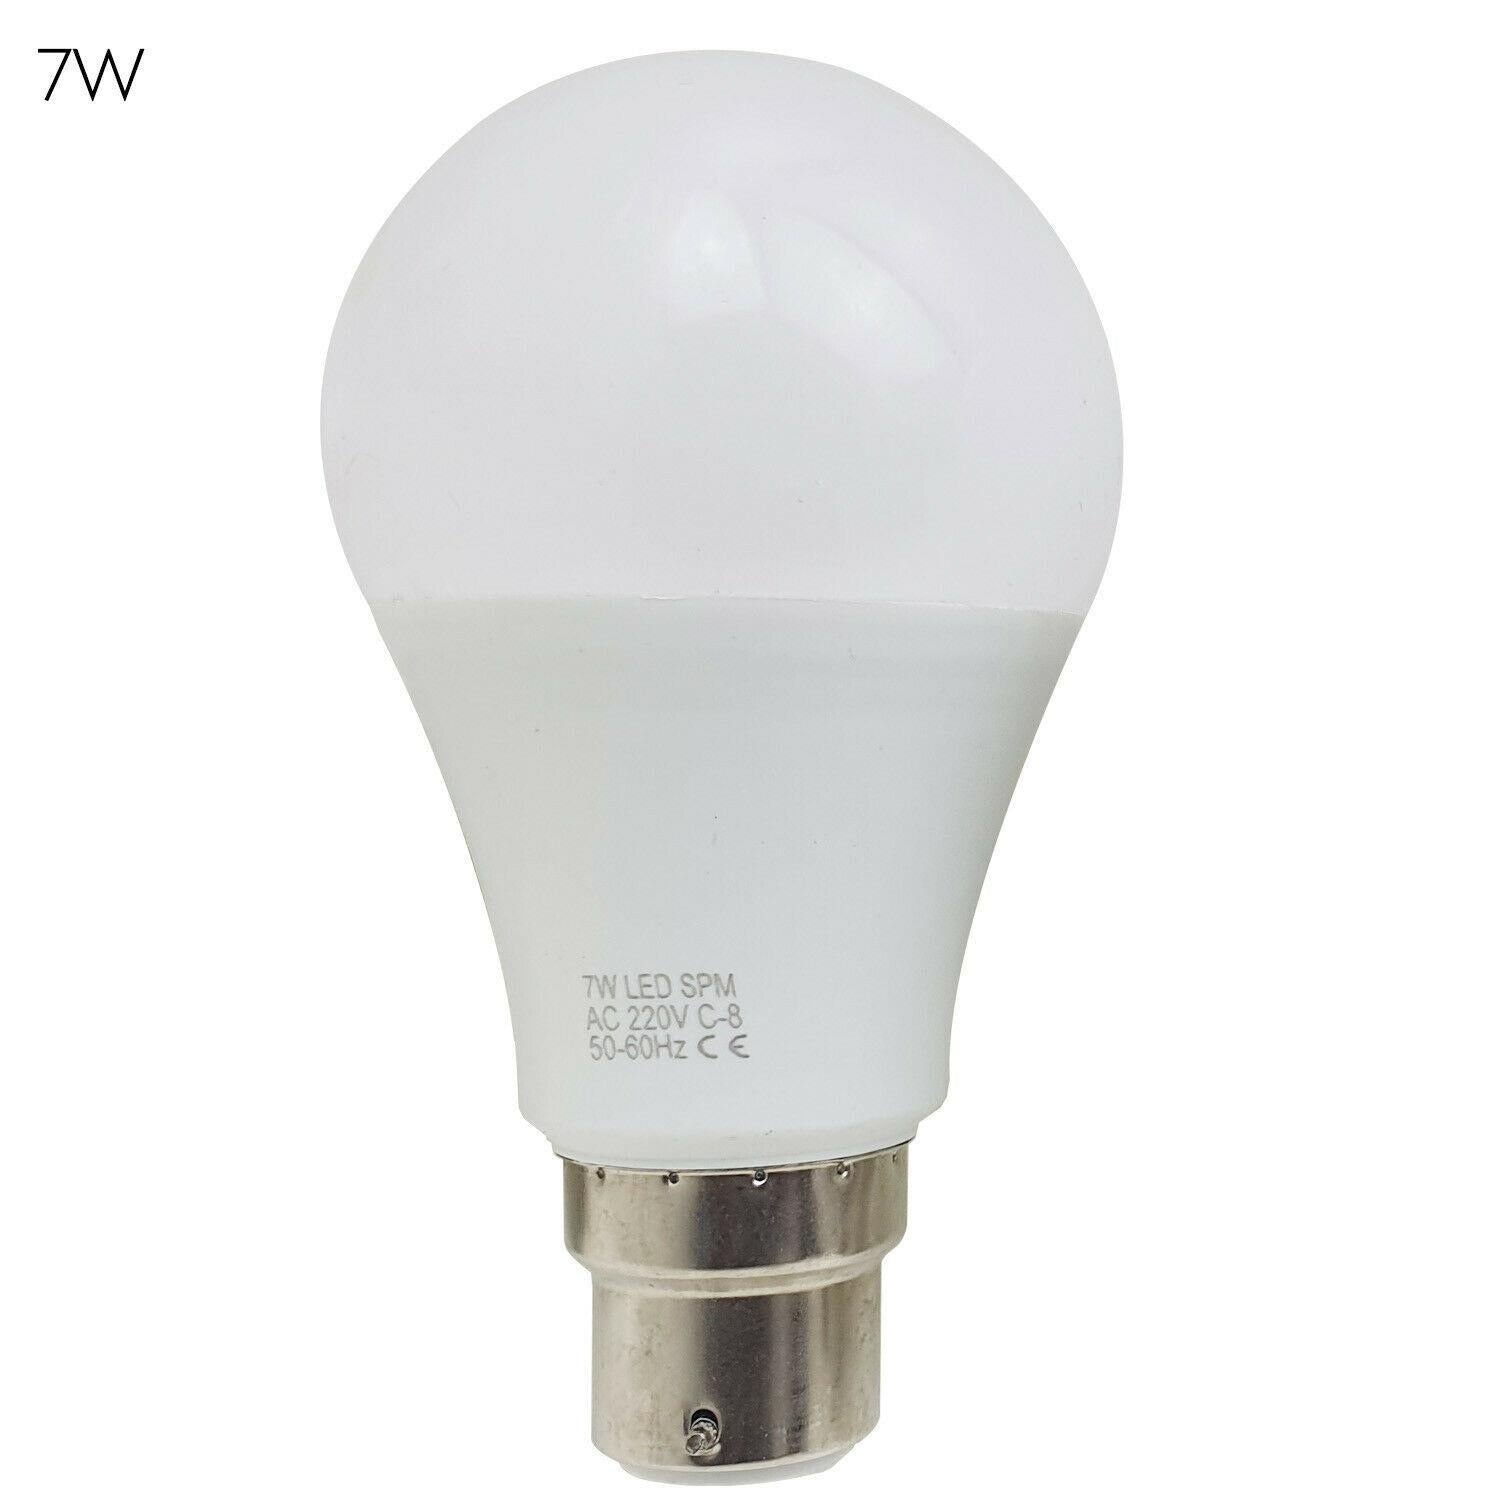 3 X LED Lamp 3W-25W B22 E27 GLS Light Bulbs Cool White A+ Lighting~1440 - LEDSone UK Ltd